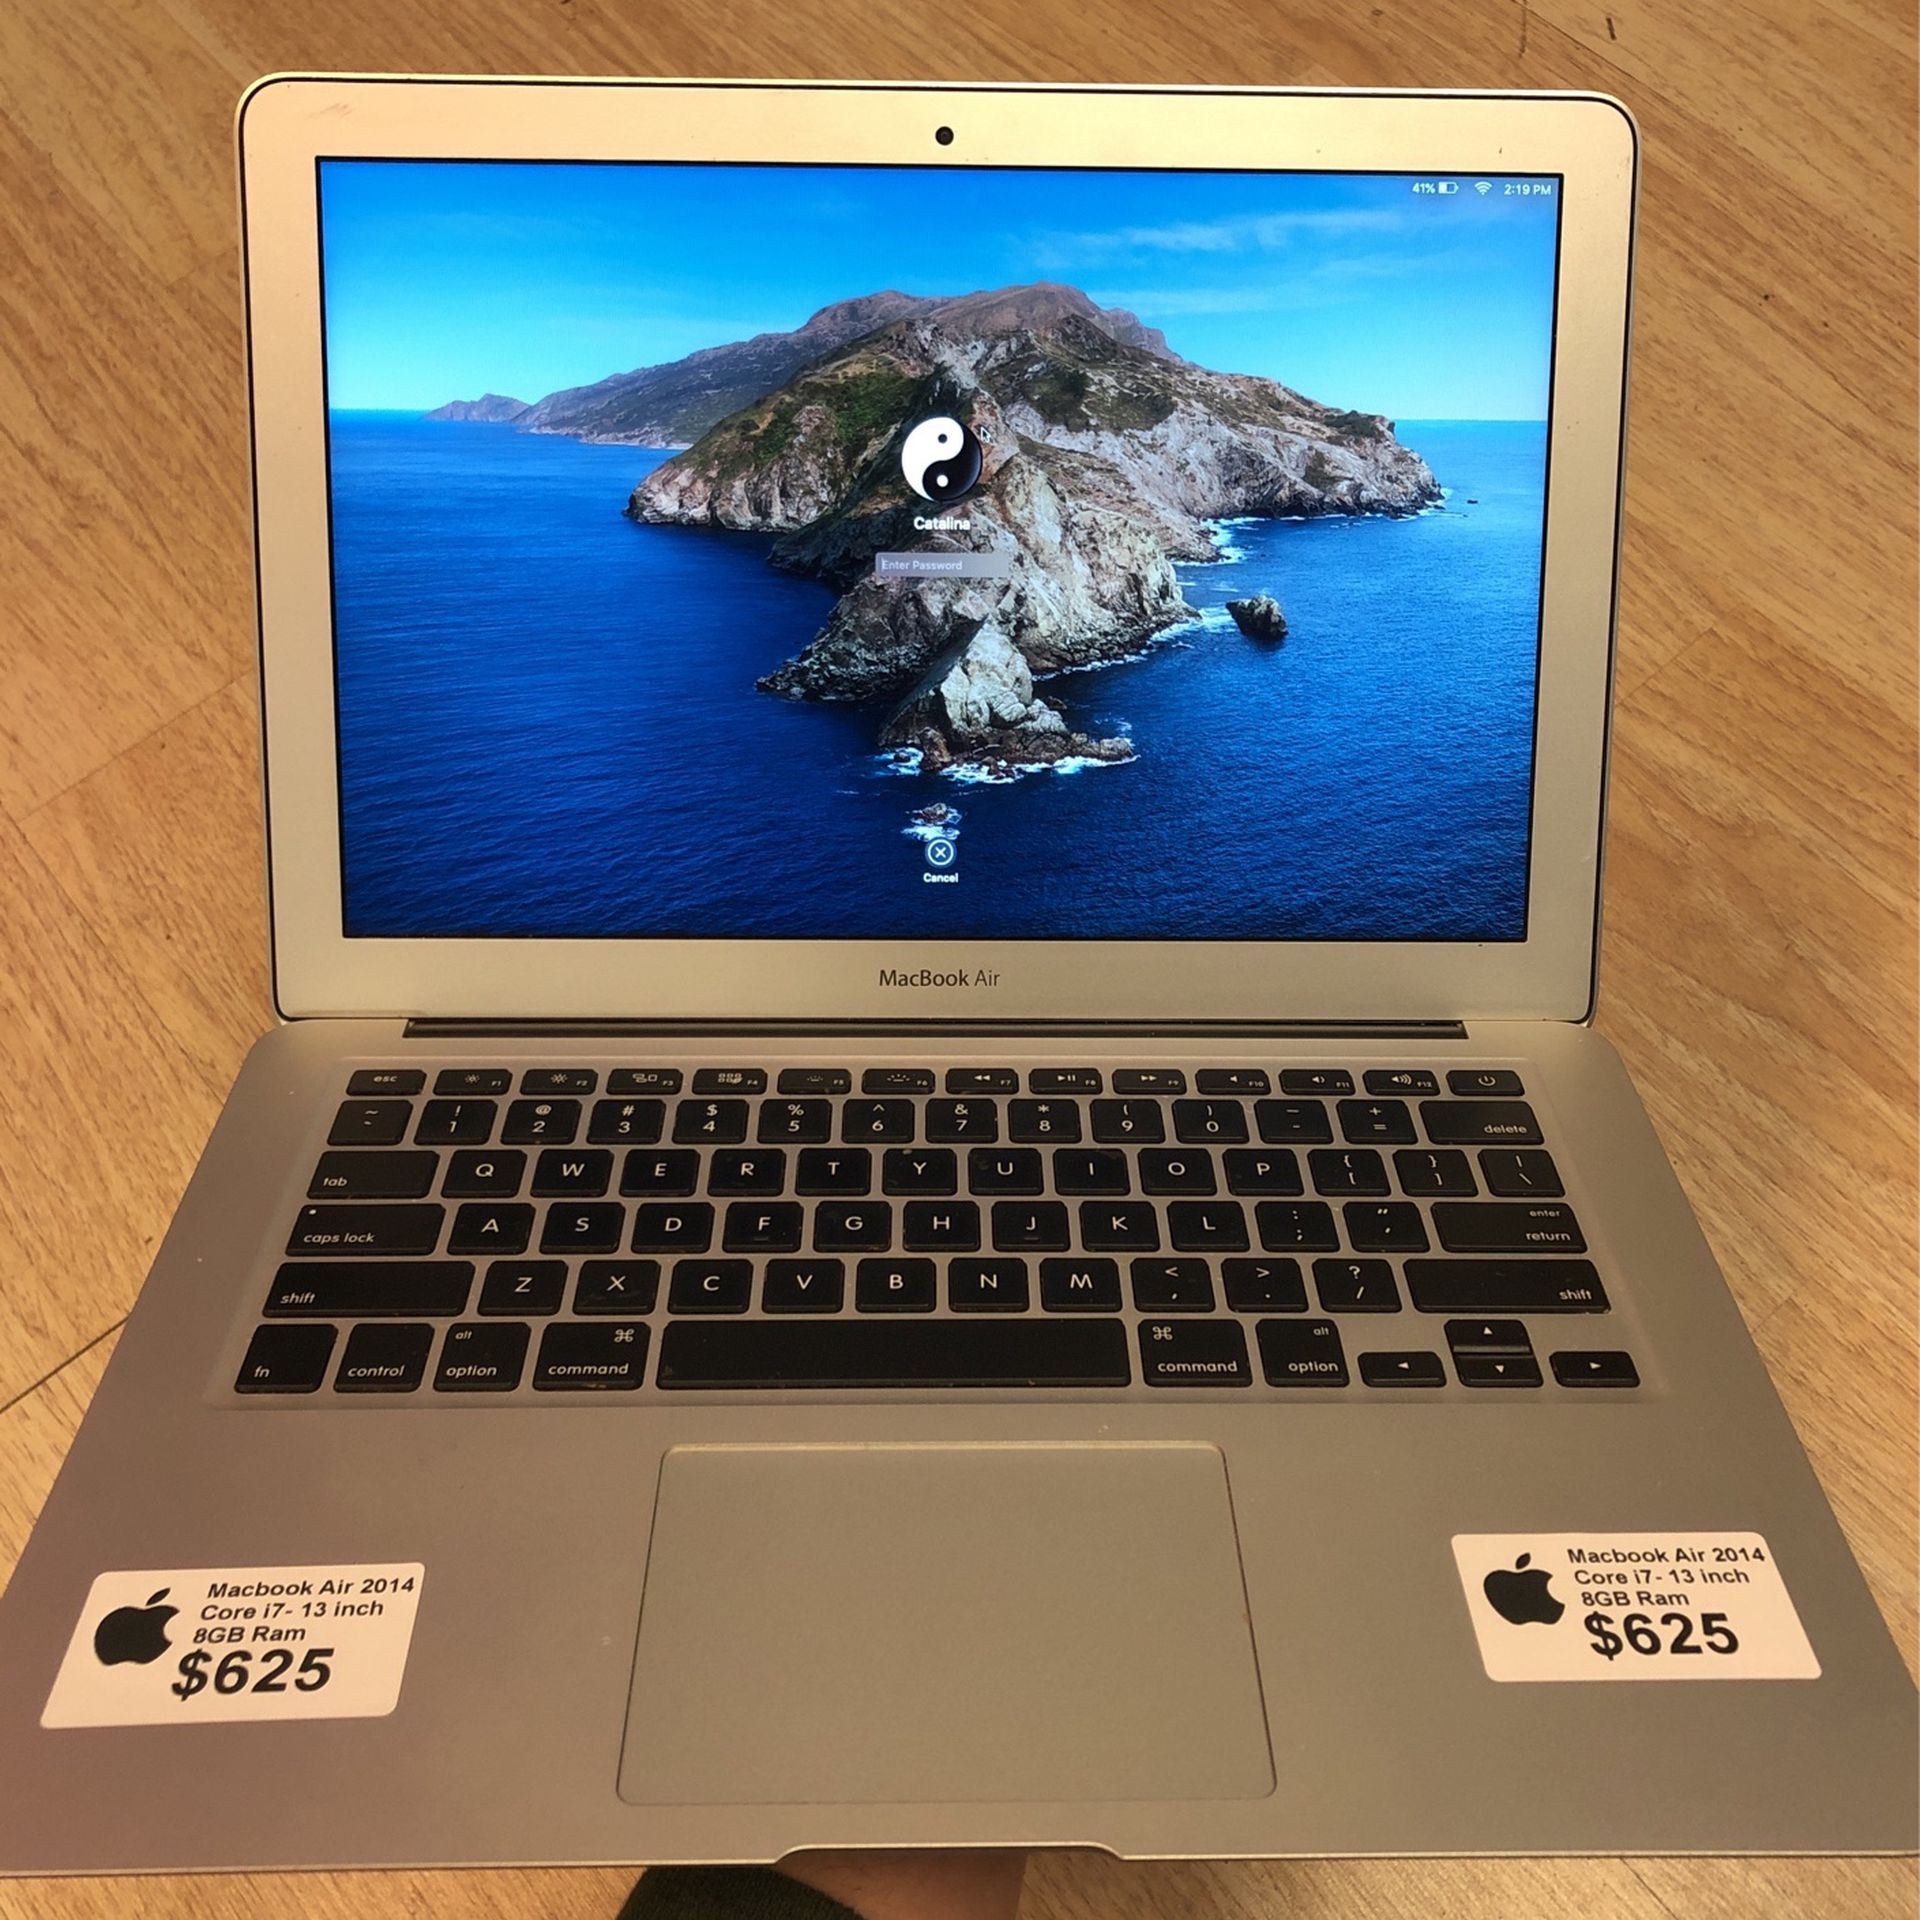 2015 MacBook Air $625$ Core i7/8GB Ram